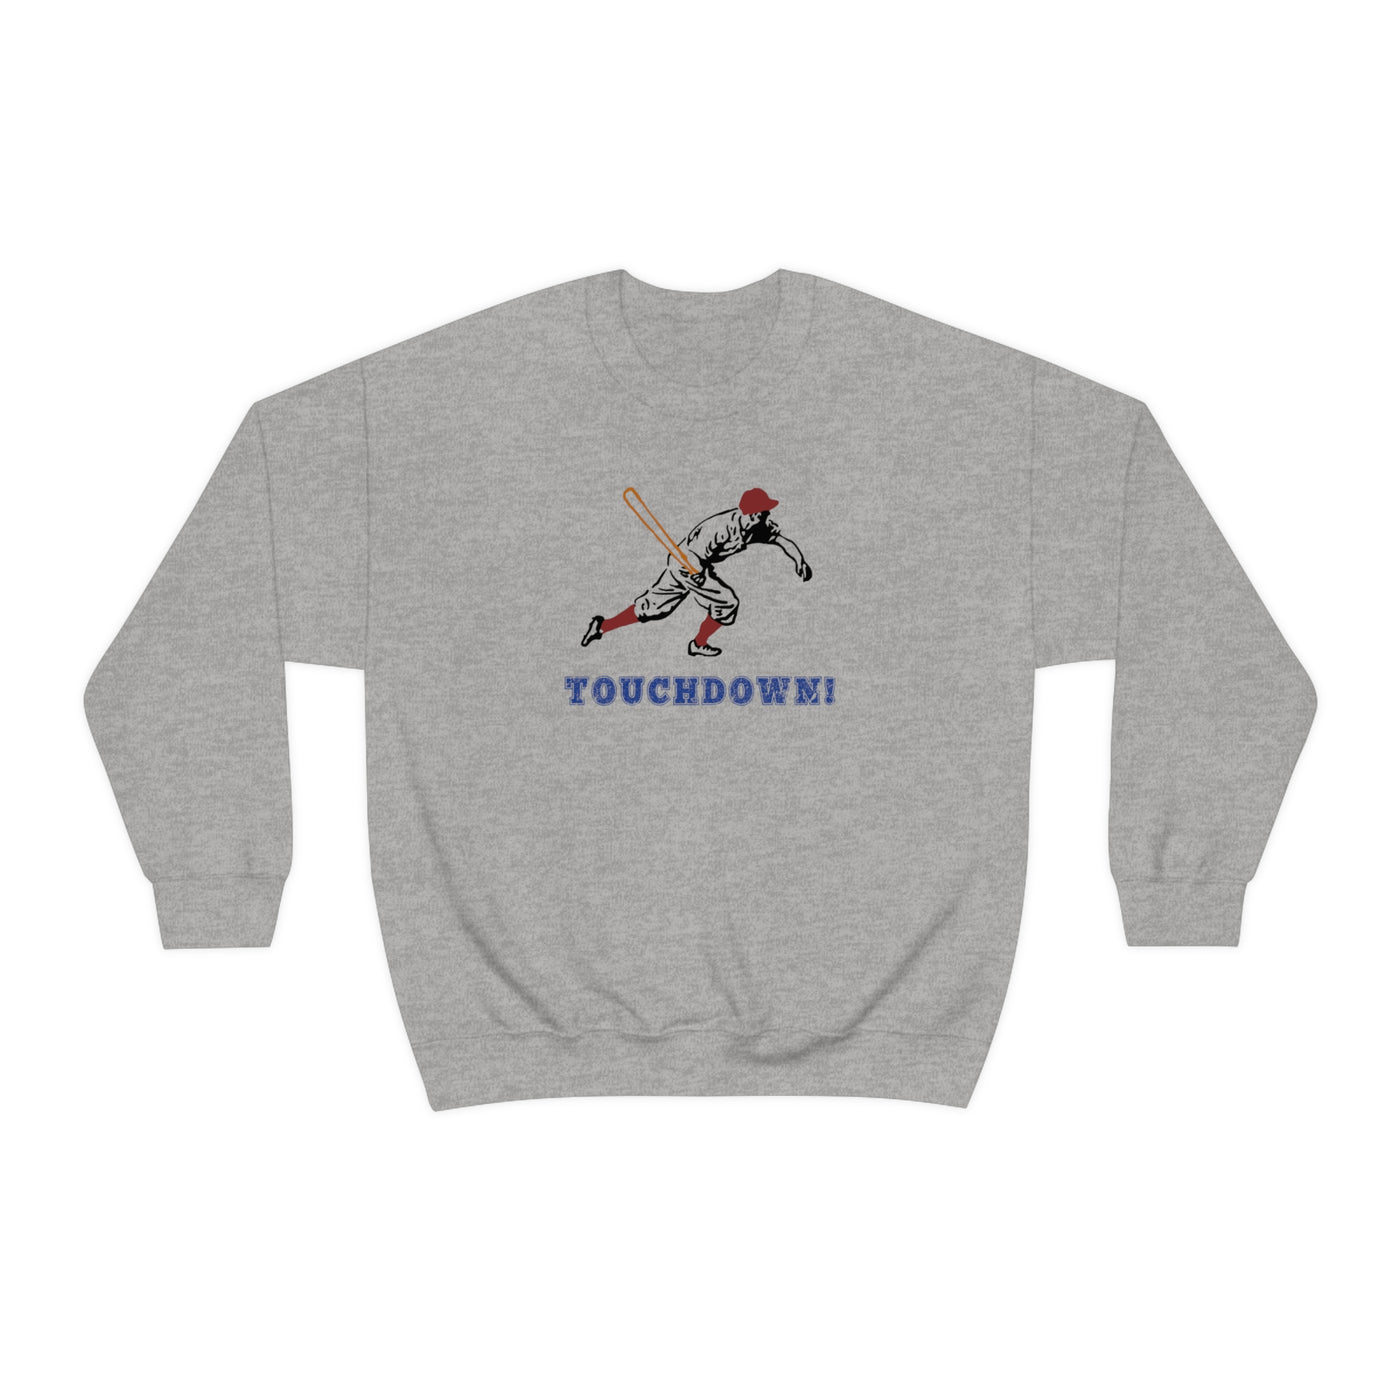 Touchdown Crewneck Sweatshirt